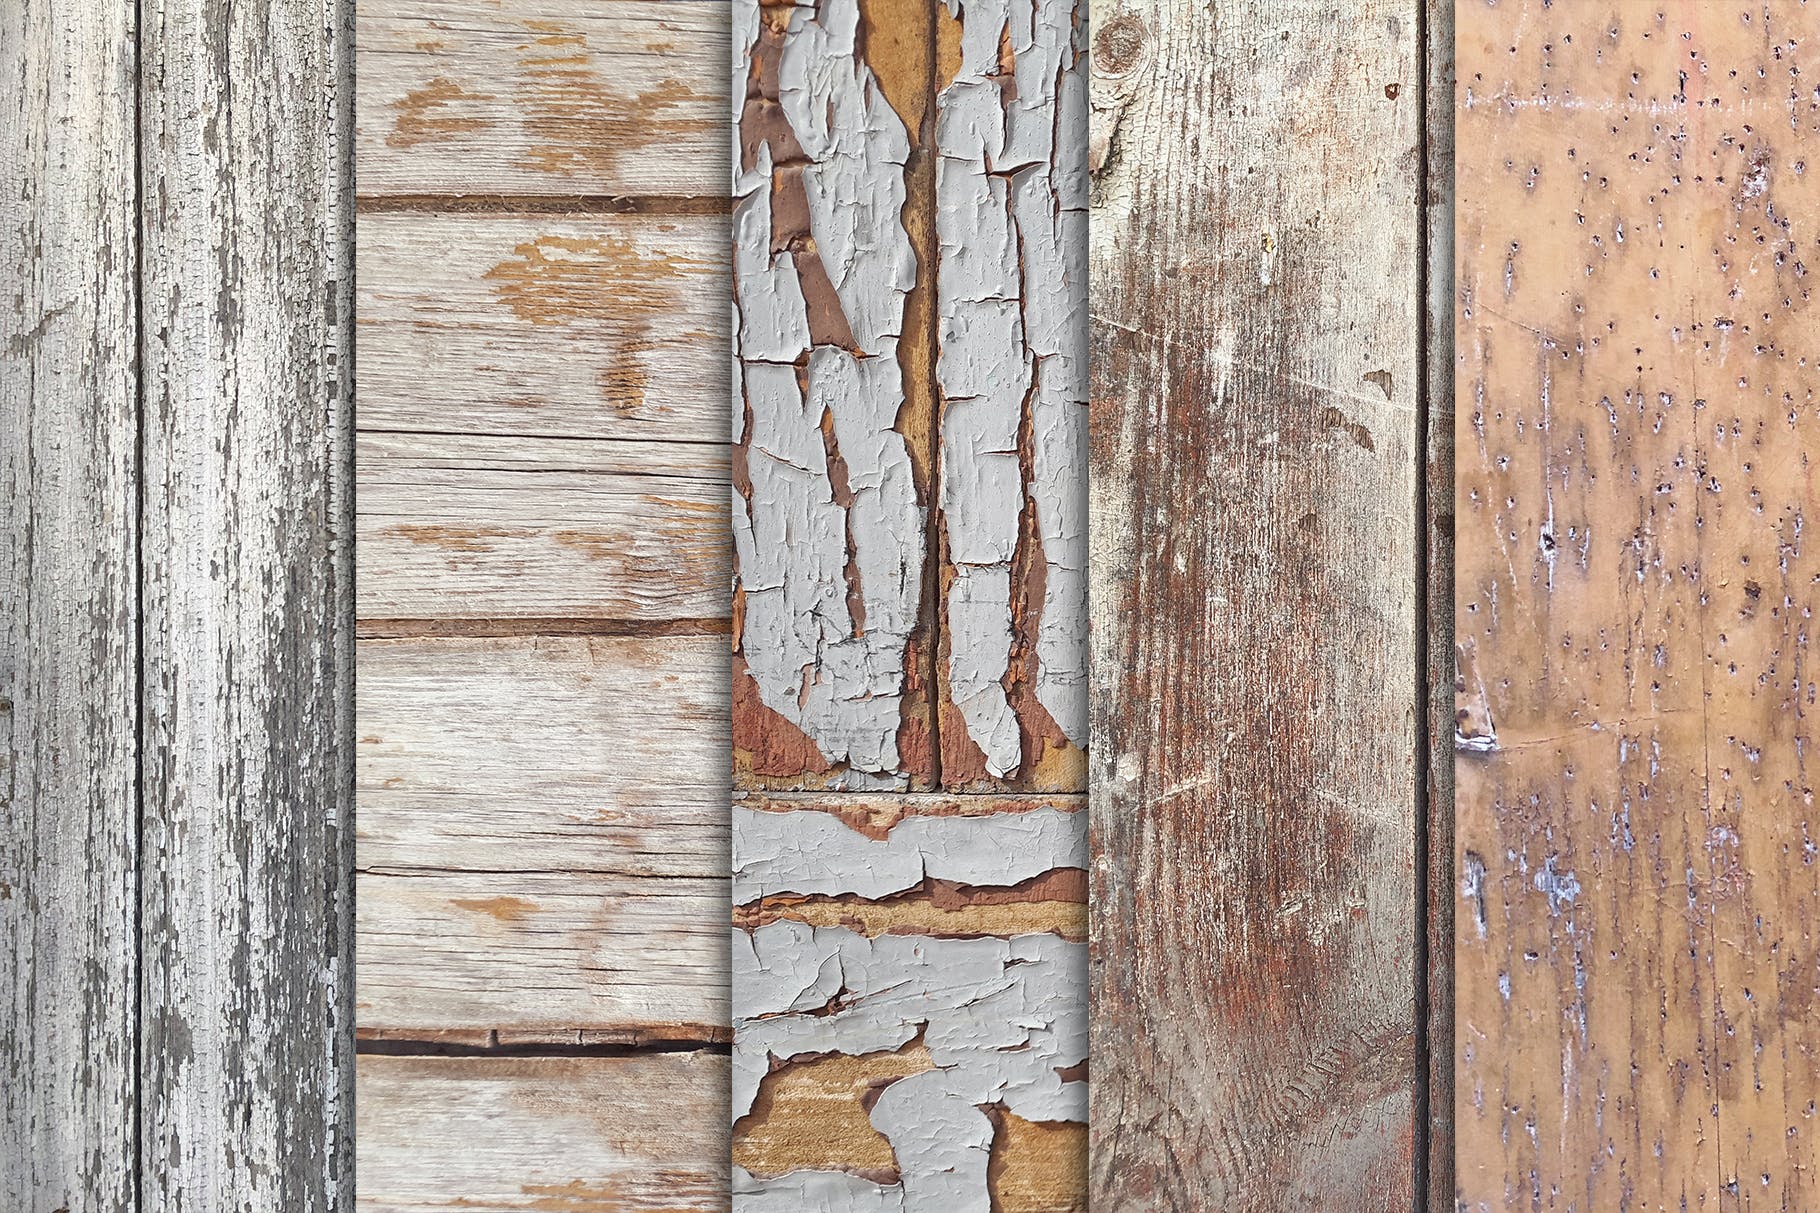 10张古老木地板高清照片图片背景素材v3 Grunge Wood Textures x10 Vol 3插图(1)